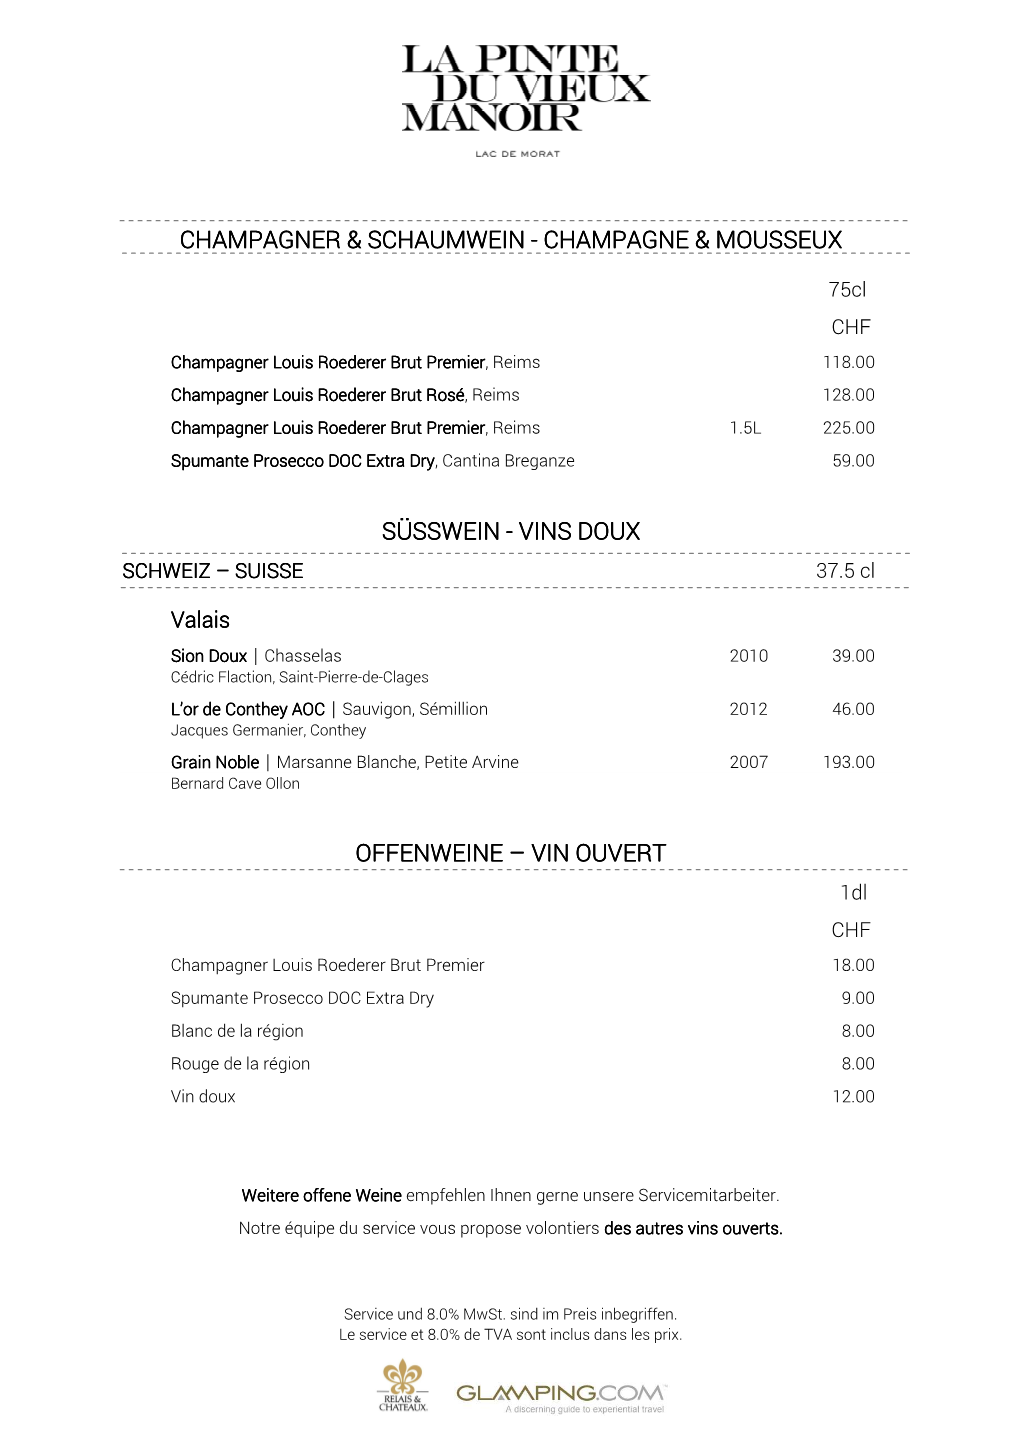 Champagner & Schaumwein